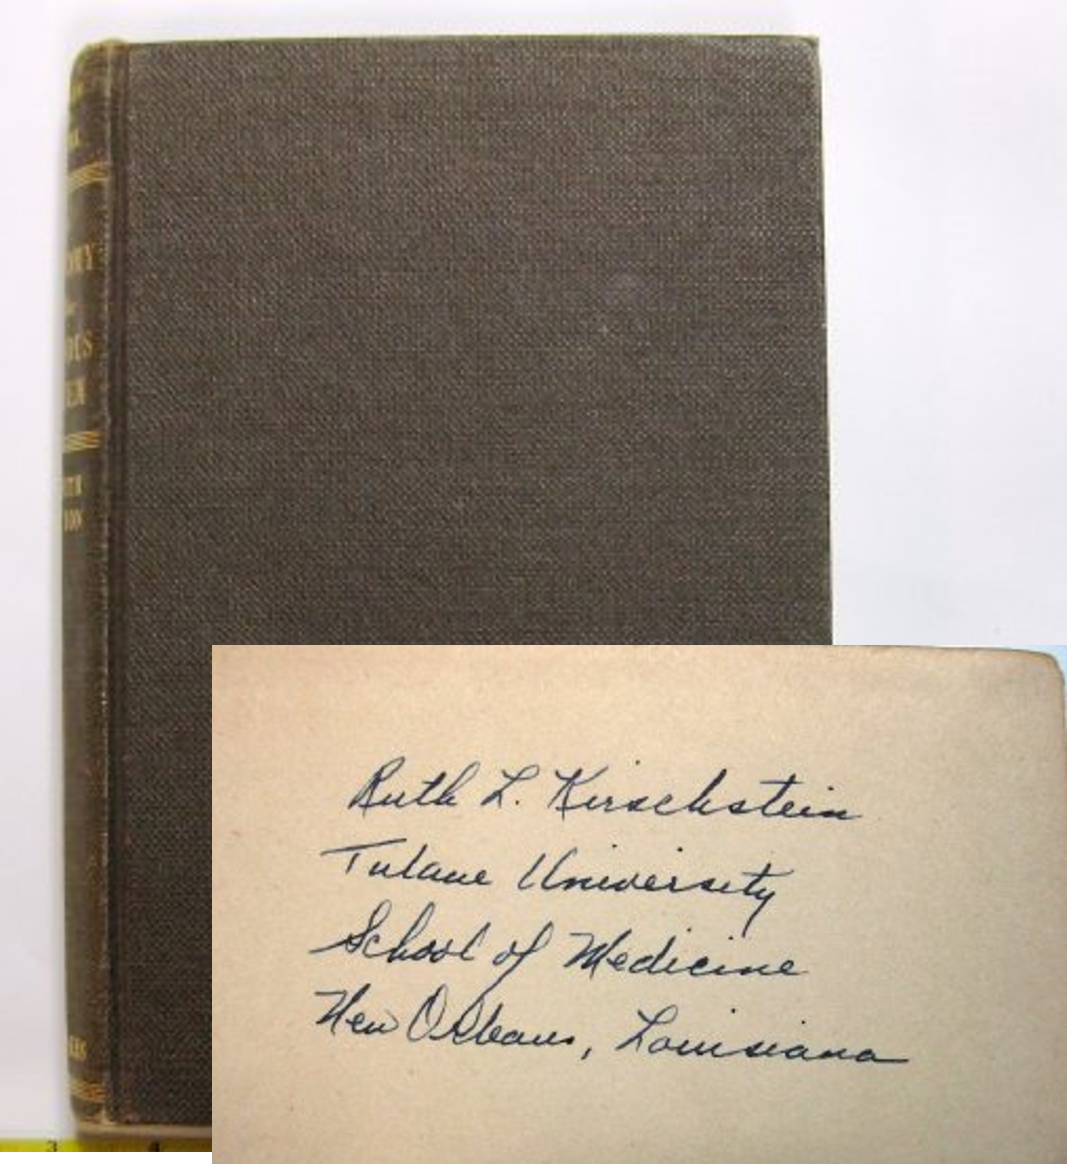 Textbook belonging to Dr. Kirschstein